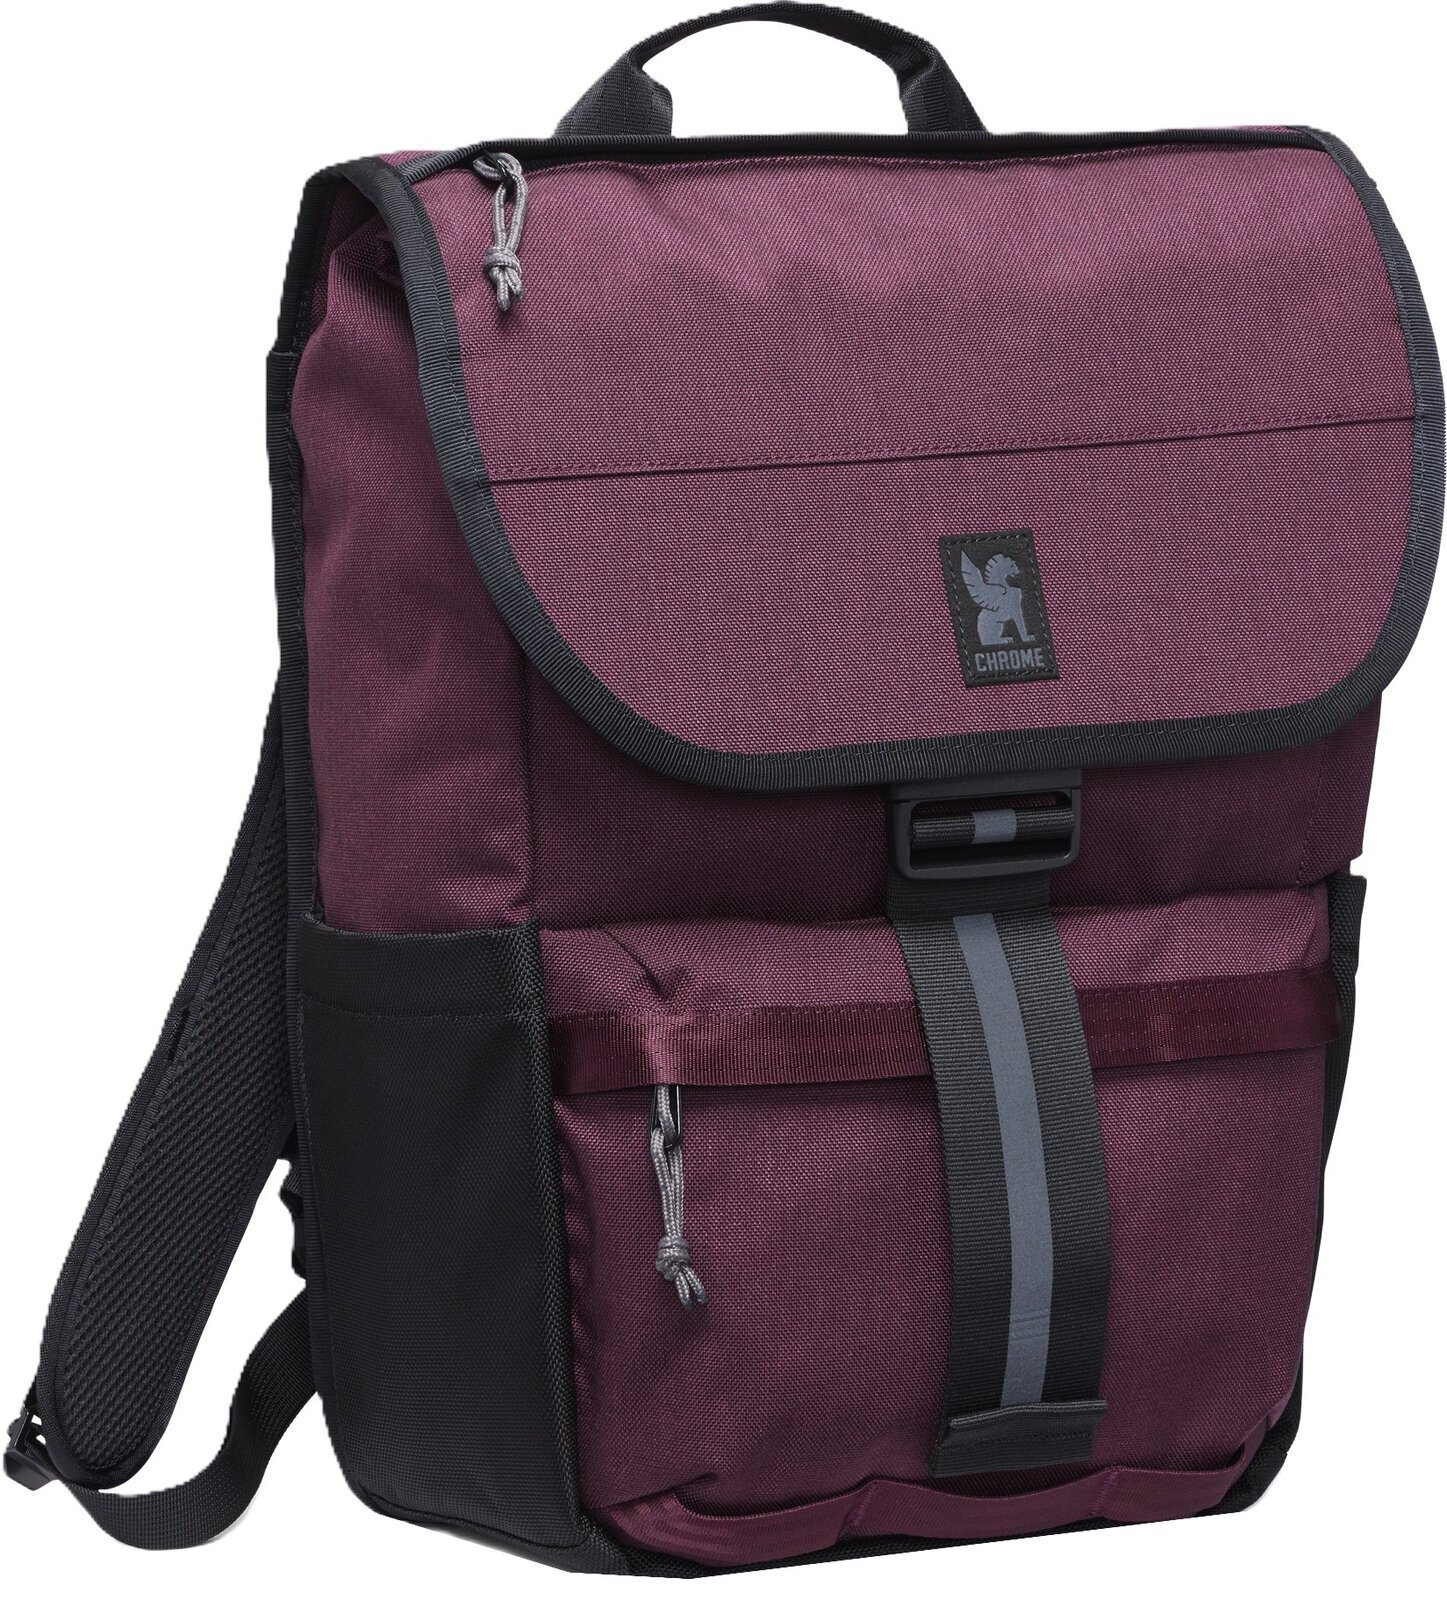 Lifestyle Backpack / Bag Chrome Corbet Backpack Royale 24 L Backpack